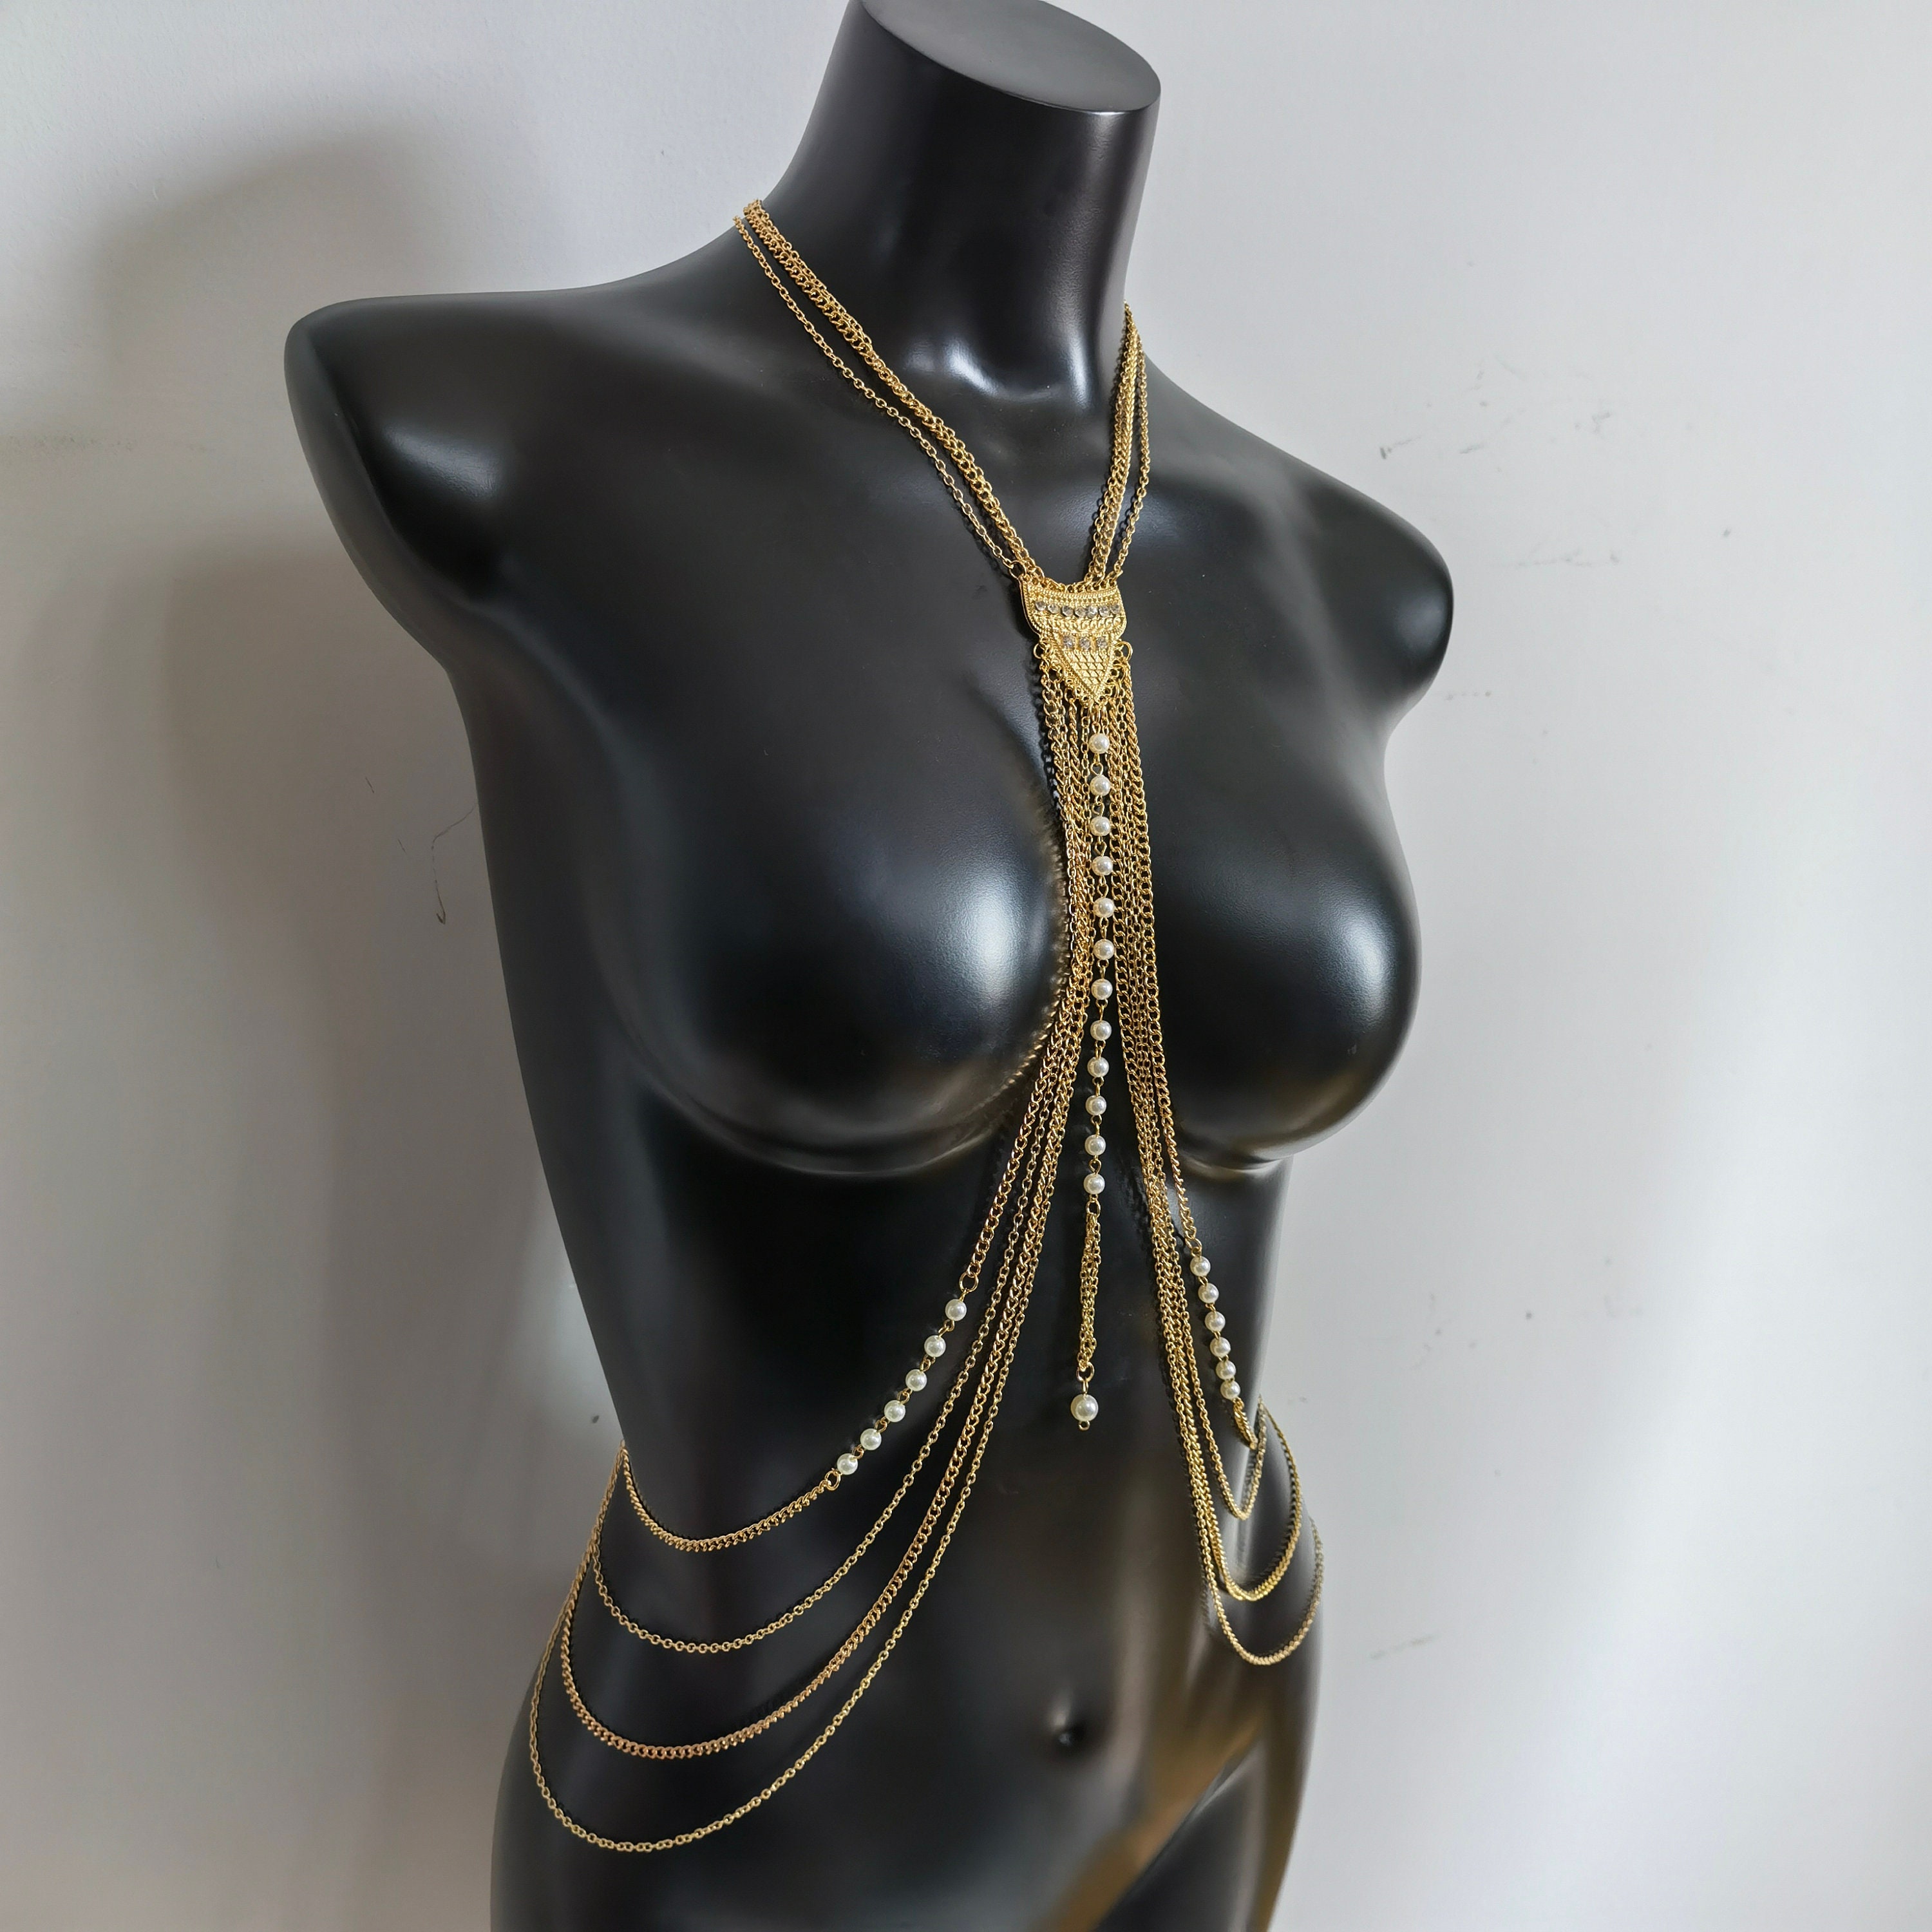 Rhinestone Body Chain, Bra Jewelry, Bikini Body Jewelry, Crystal